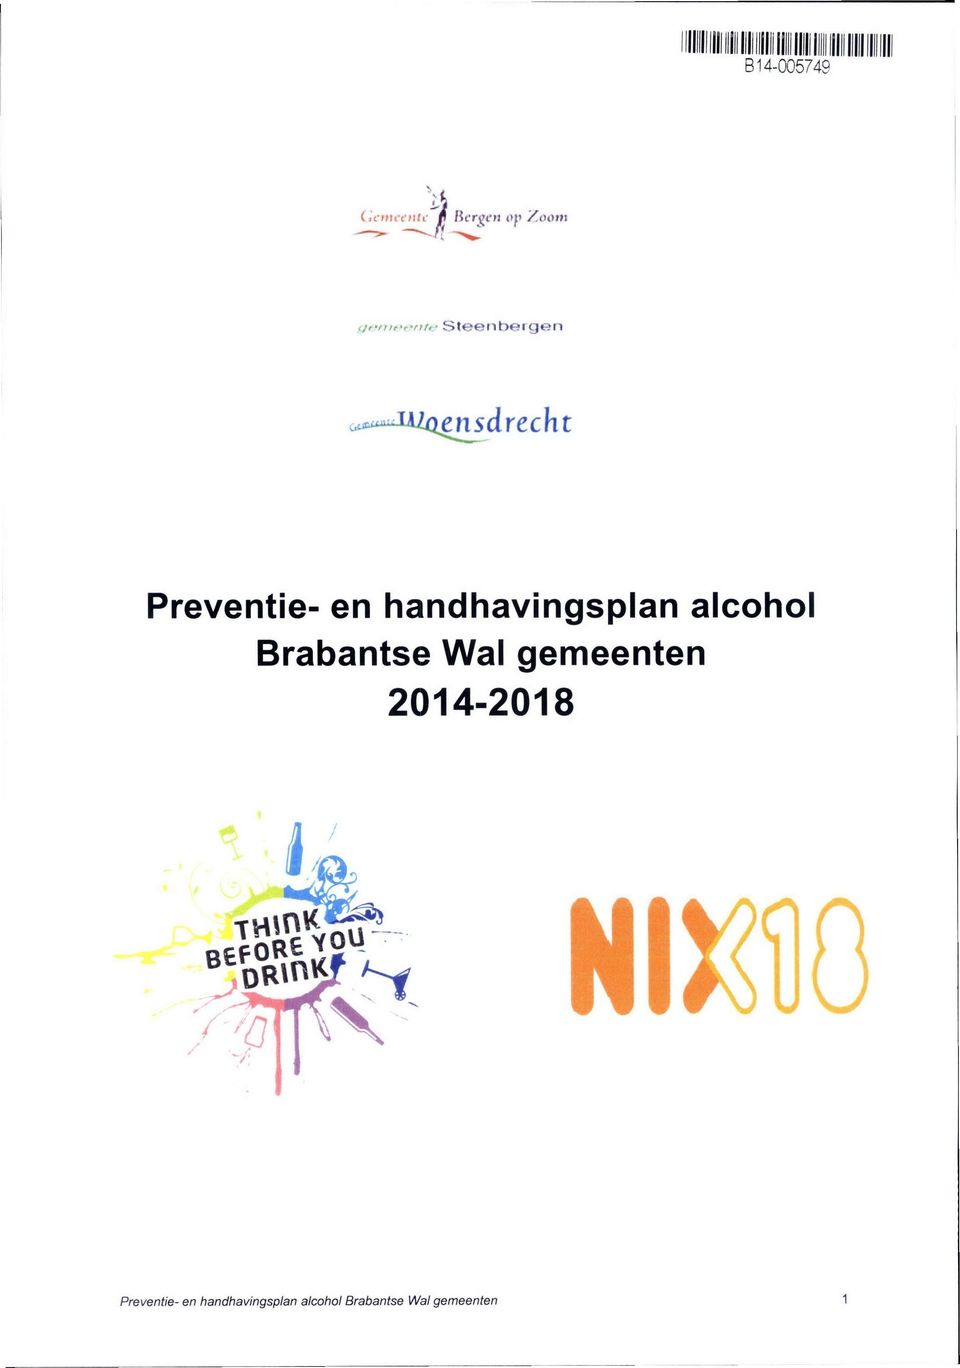 Brabantse Wal gemeenten 2014-2018 mm Preventie-